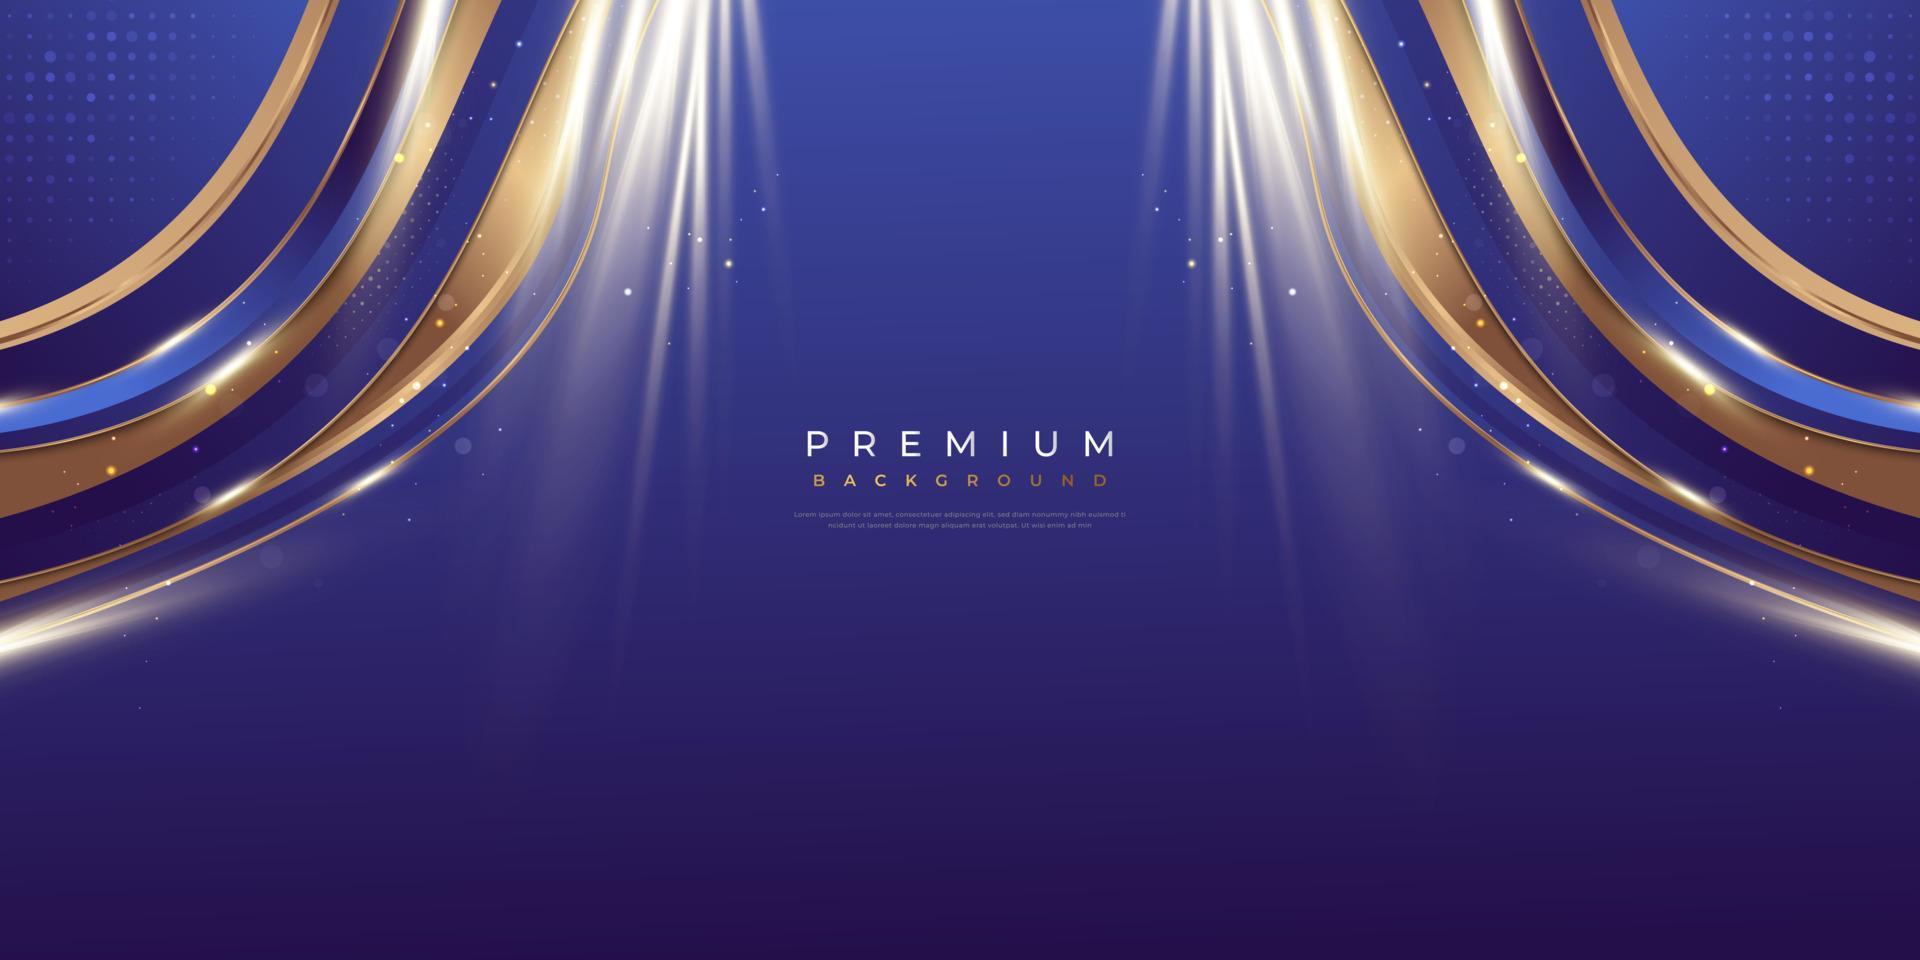 luxe blauw en goud achtergrond in papier besnoeiing stijl met schijnend gouden licht. kan worden gebruikt voor prijs, banier, kaart, voordracht, ceremonie, formeel uitnodiging of certificaat ontwerp vector